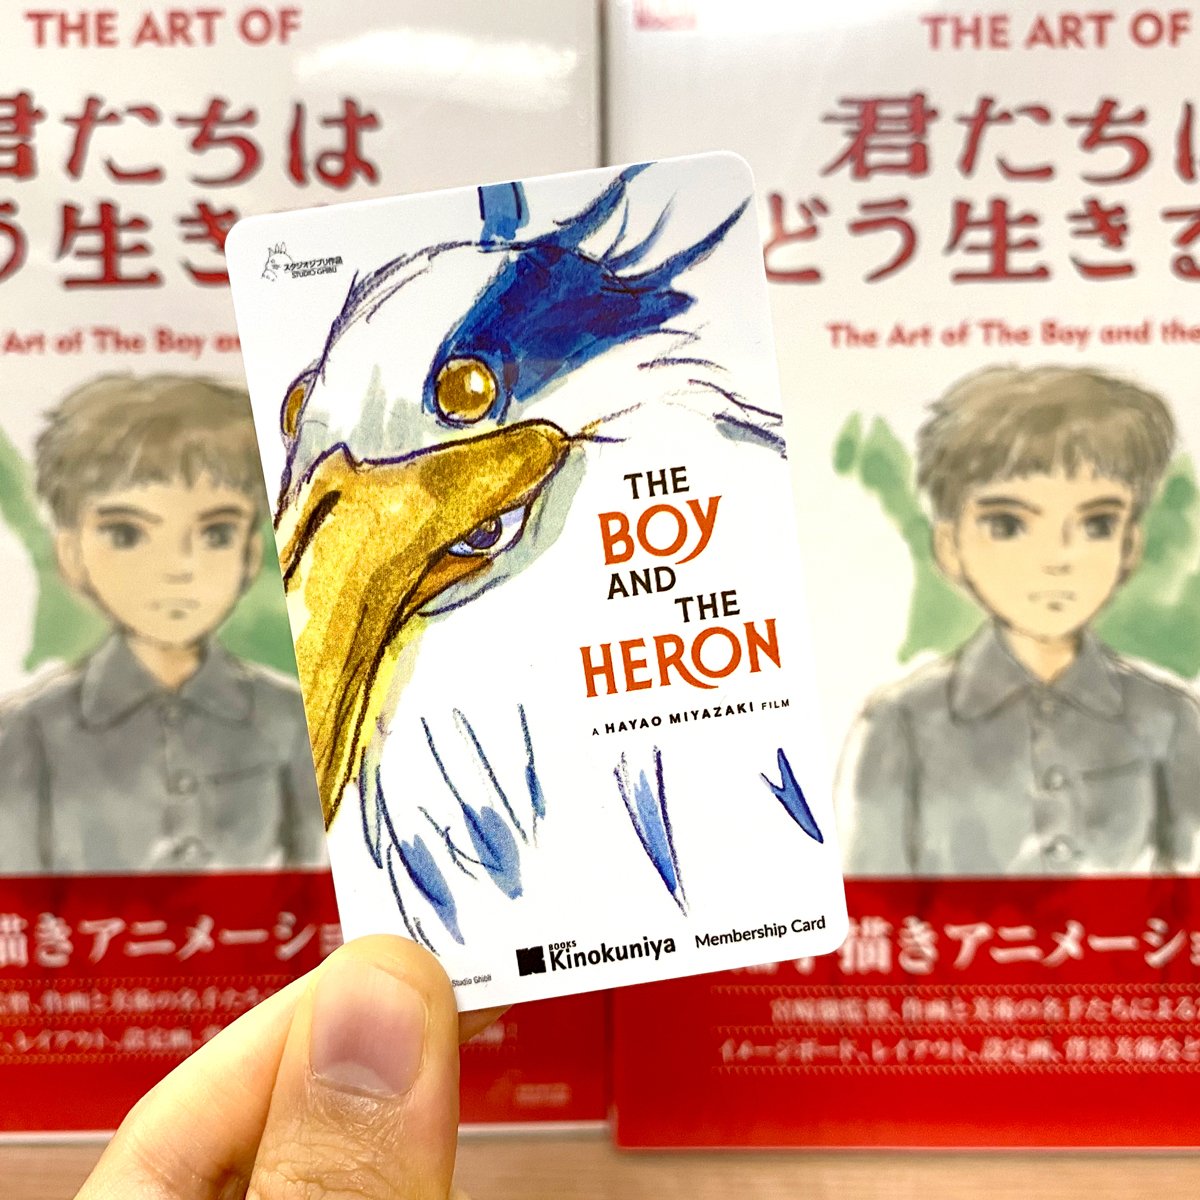 Sucesso de ?The Boy and the Heron? e outras notícias de anime e mangá